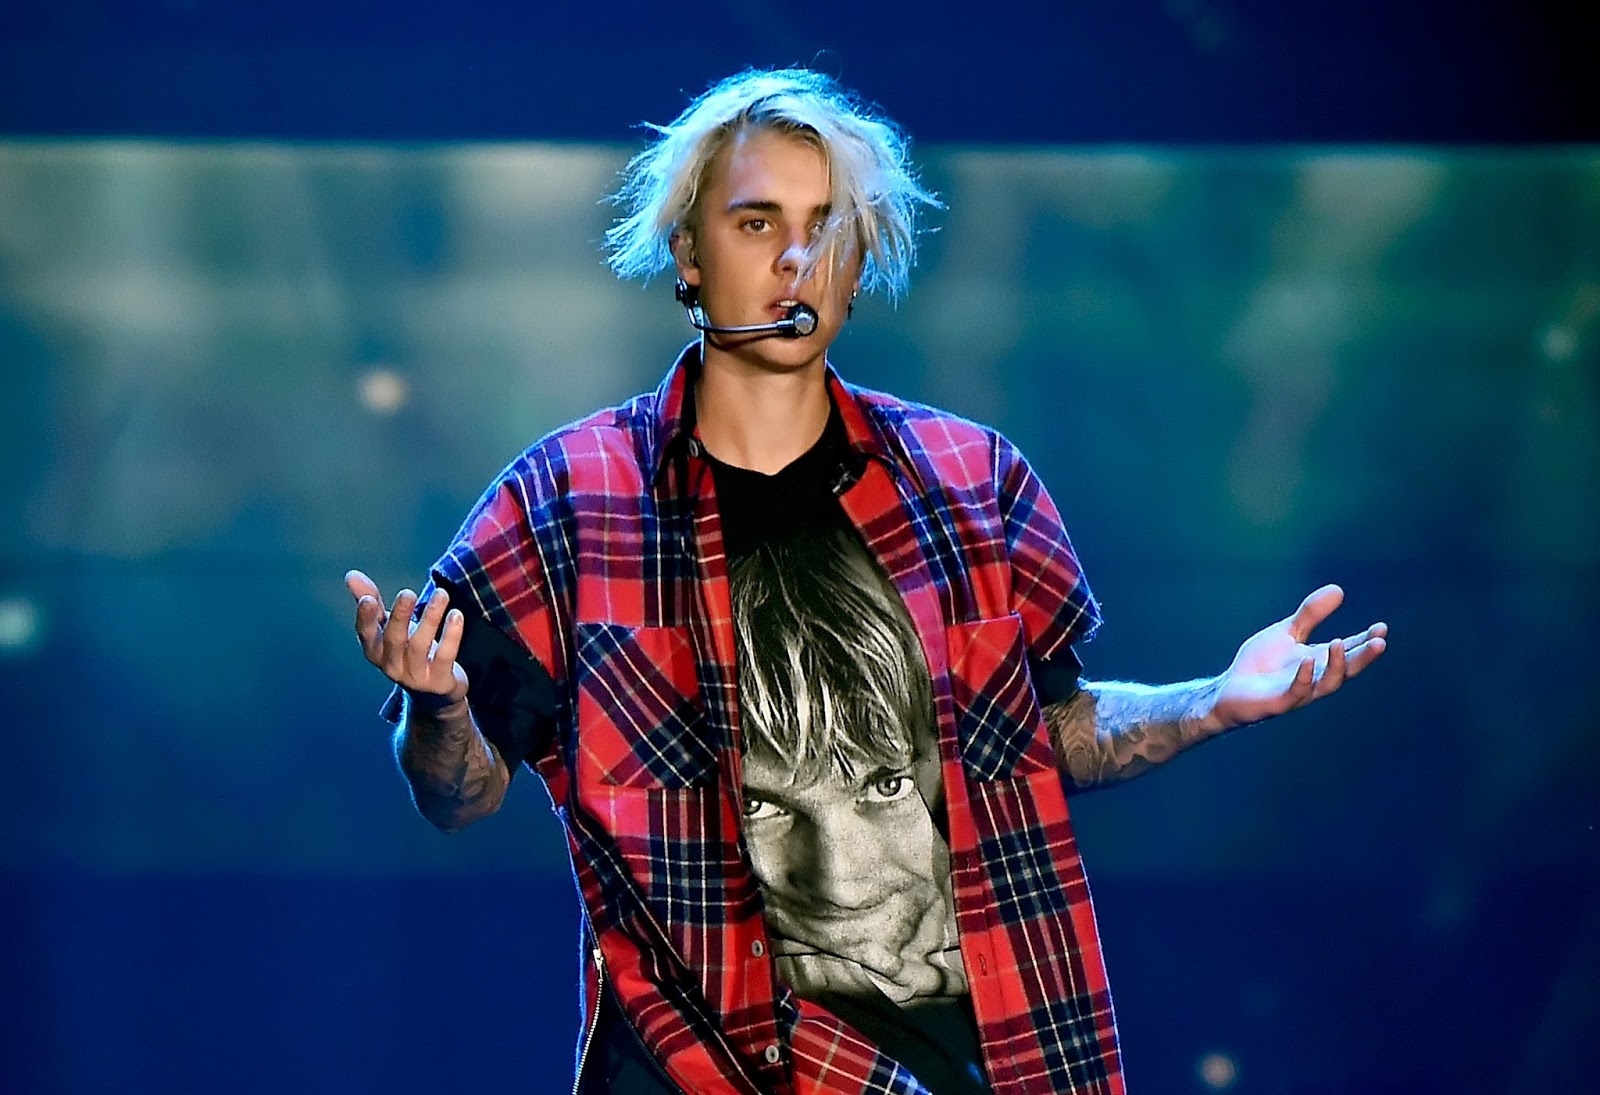 Justin Bieber pide a sus fans en Birmingham, Inglaterra que no griten pues es "repulsivo". Cúsica Plus